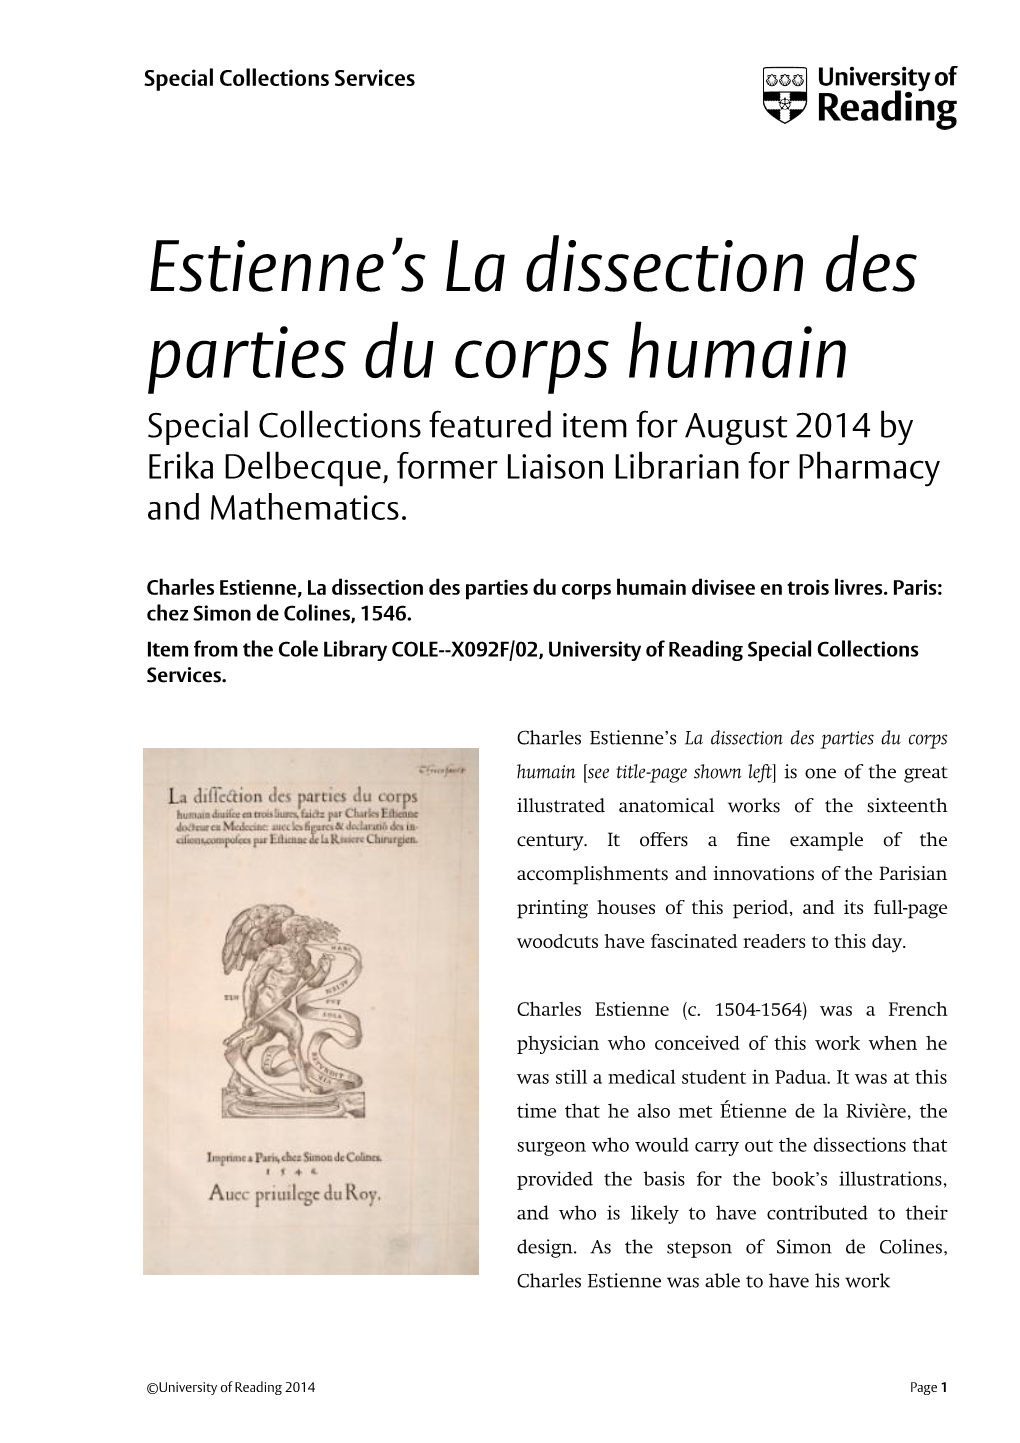 Estienne's La Dissection